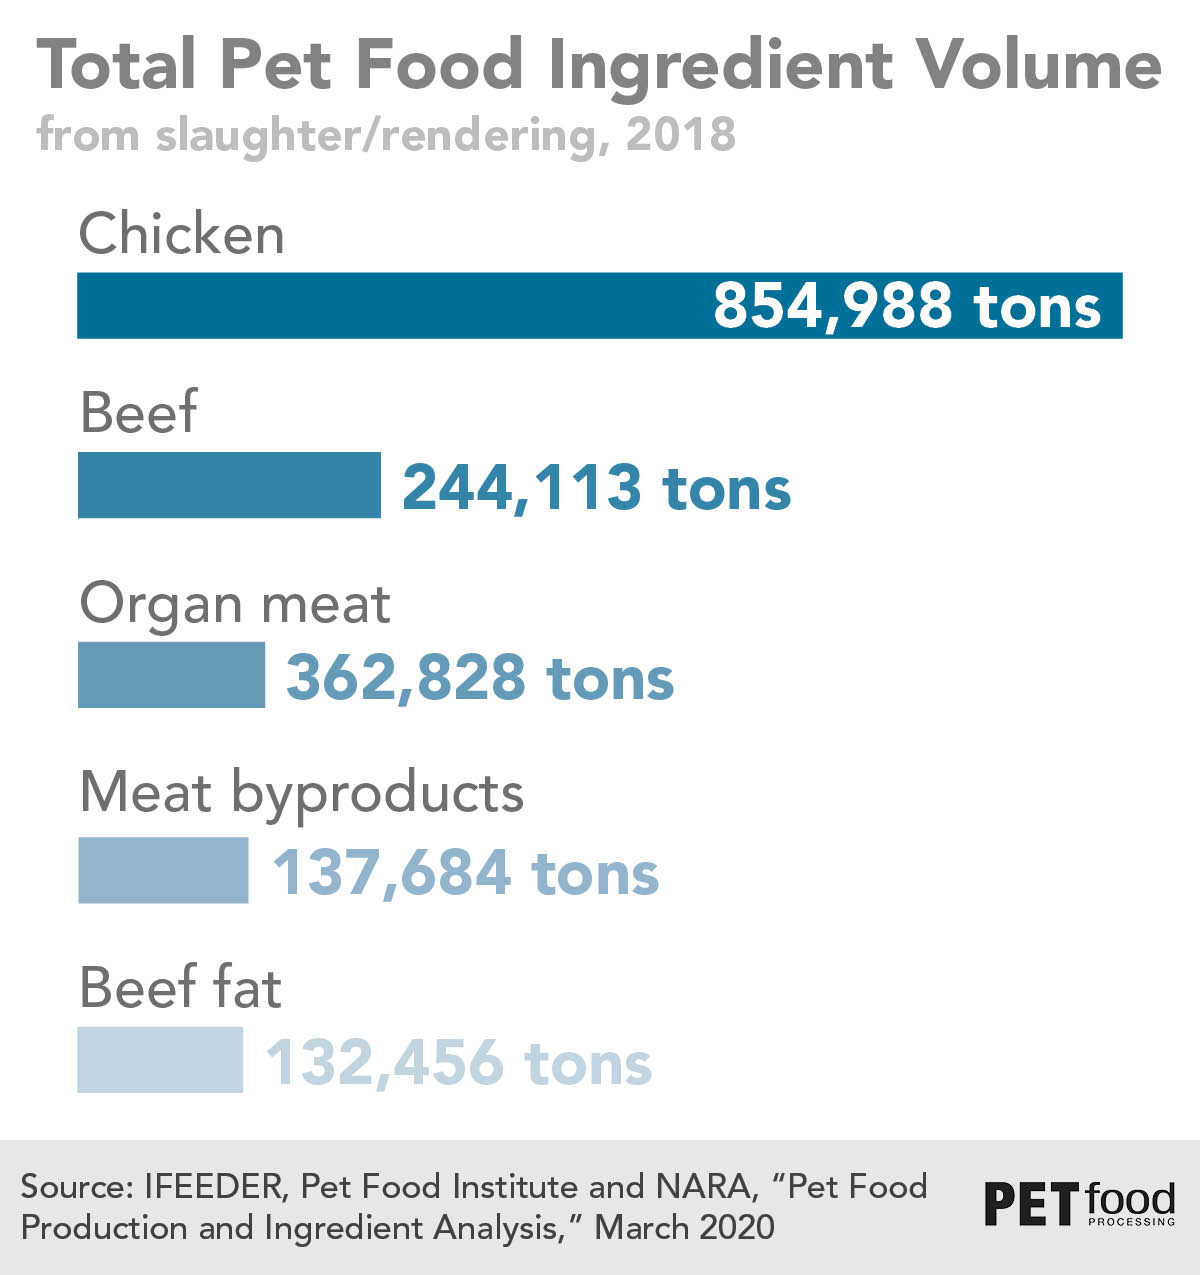 Pet food ingredients from slaughter/rendering in 2018